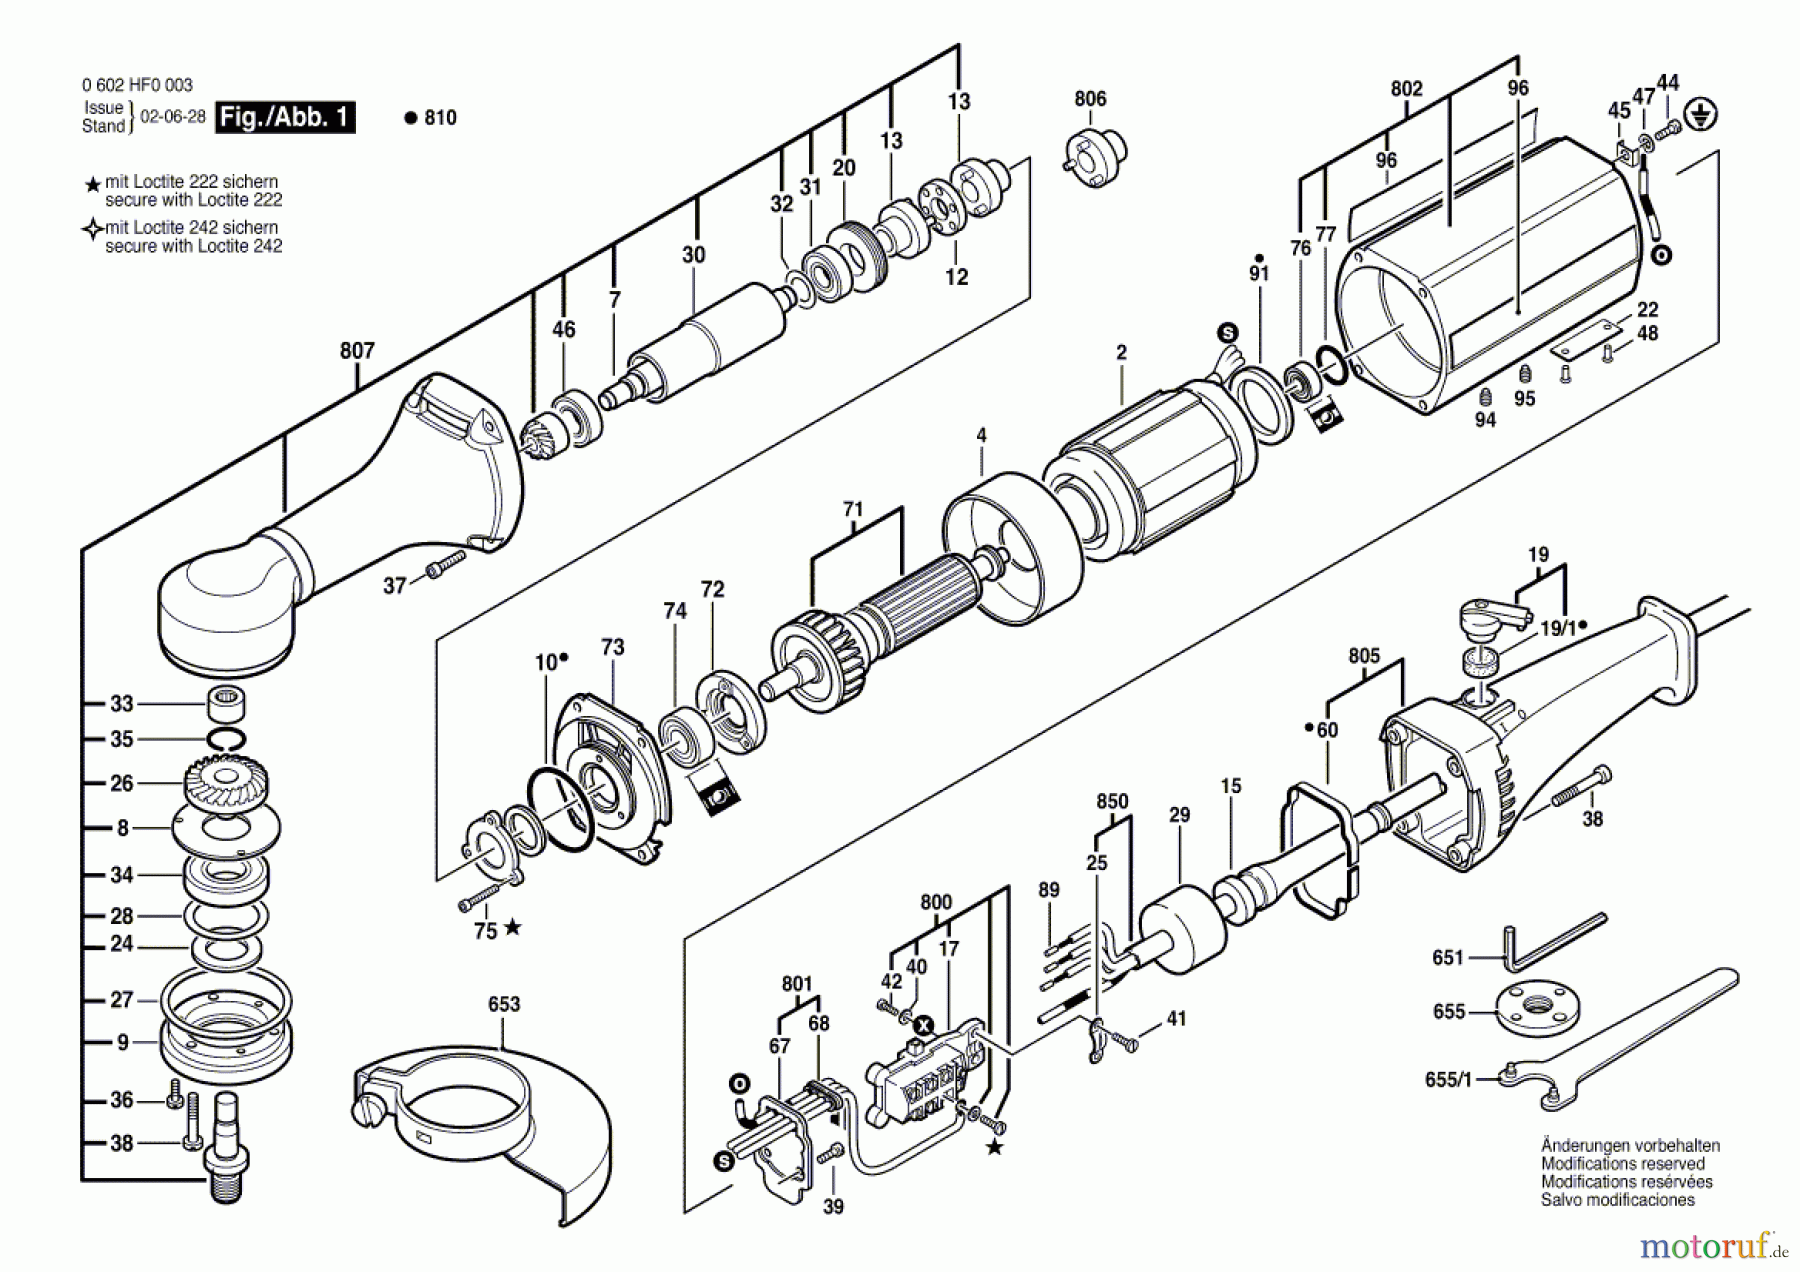  Bosch Werkzeug Hf-Winkelschleifer GR.77 Seite 1